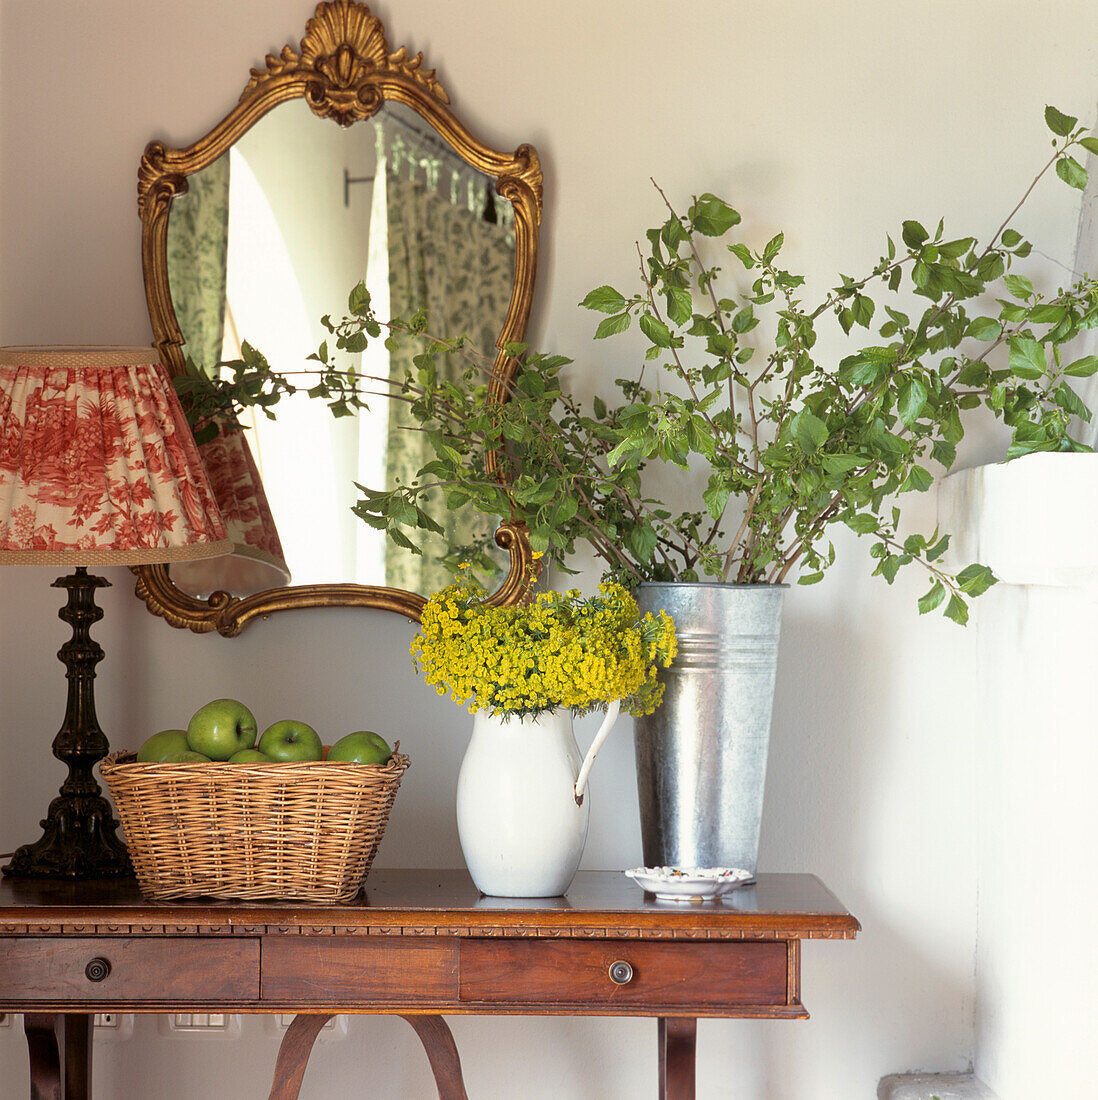 Flurtisch mit vergoldetem Spiegel, Korb mit Äpfeln und saisonalem Blumenarrangement